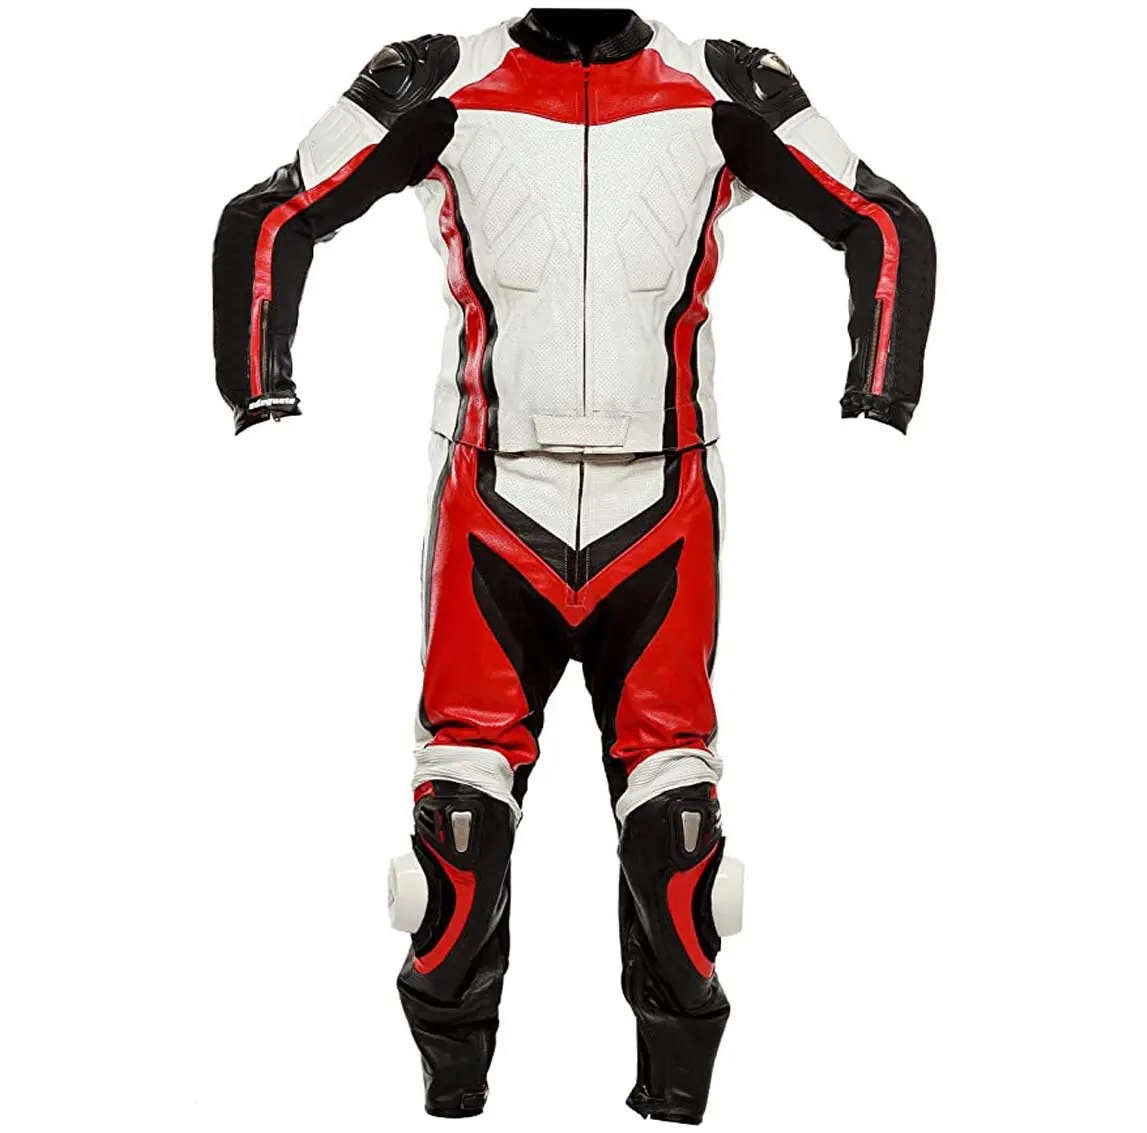 Motosiklet açık emniyet su geçirmez Motor ceket ve pantolon seti koruyucu erkekler motosiklet 2 parça sürme takım elbise zırh